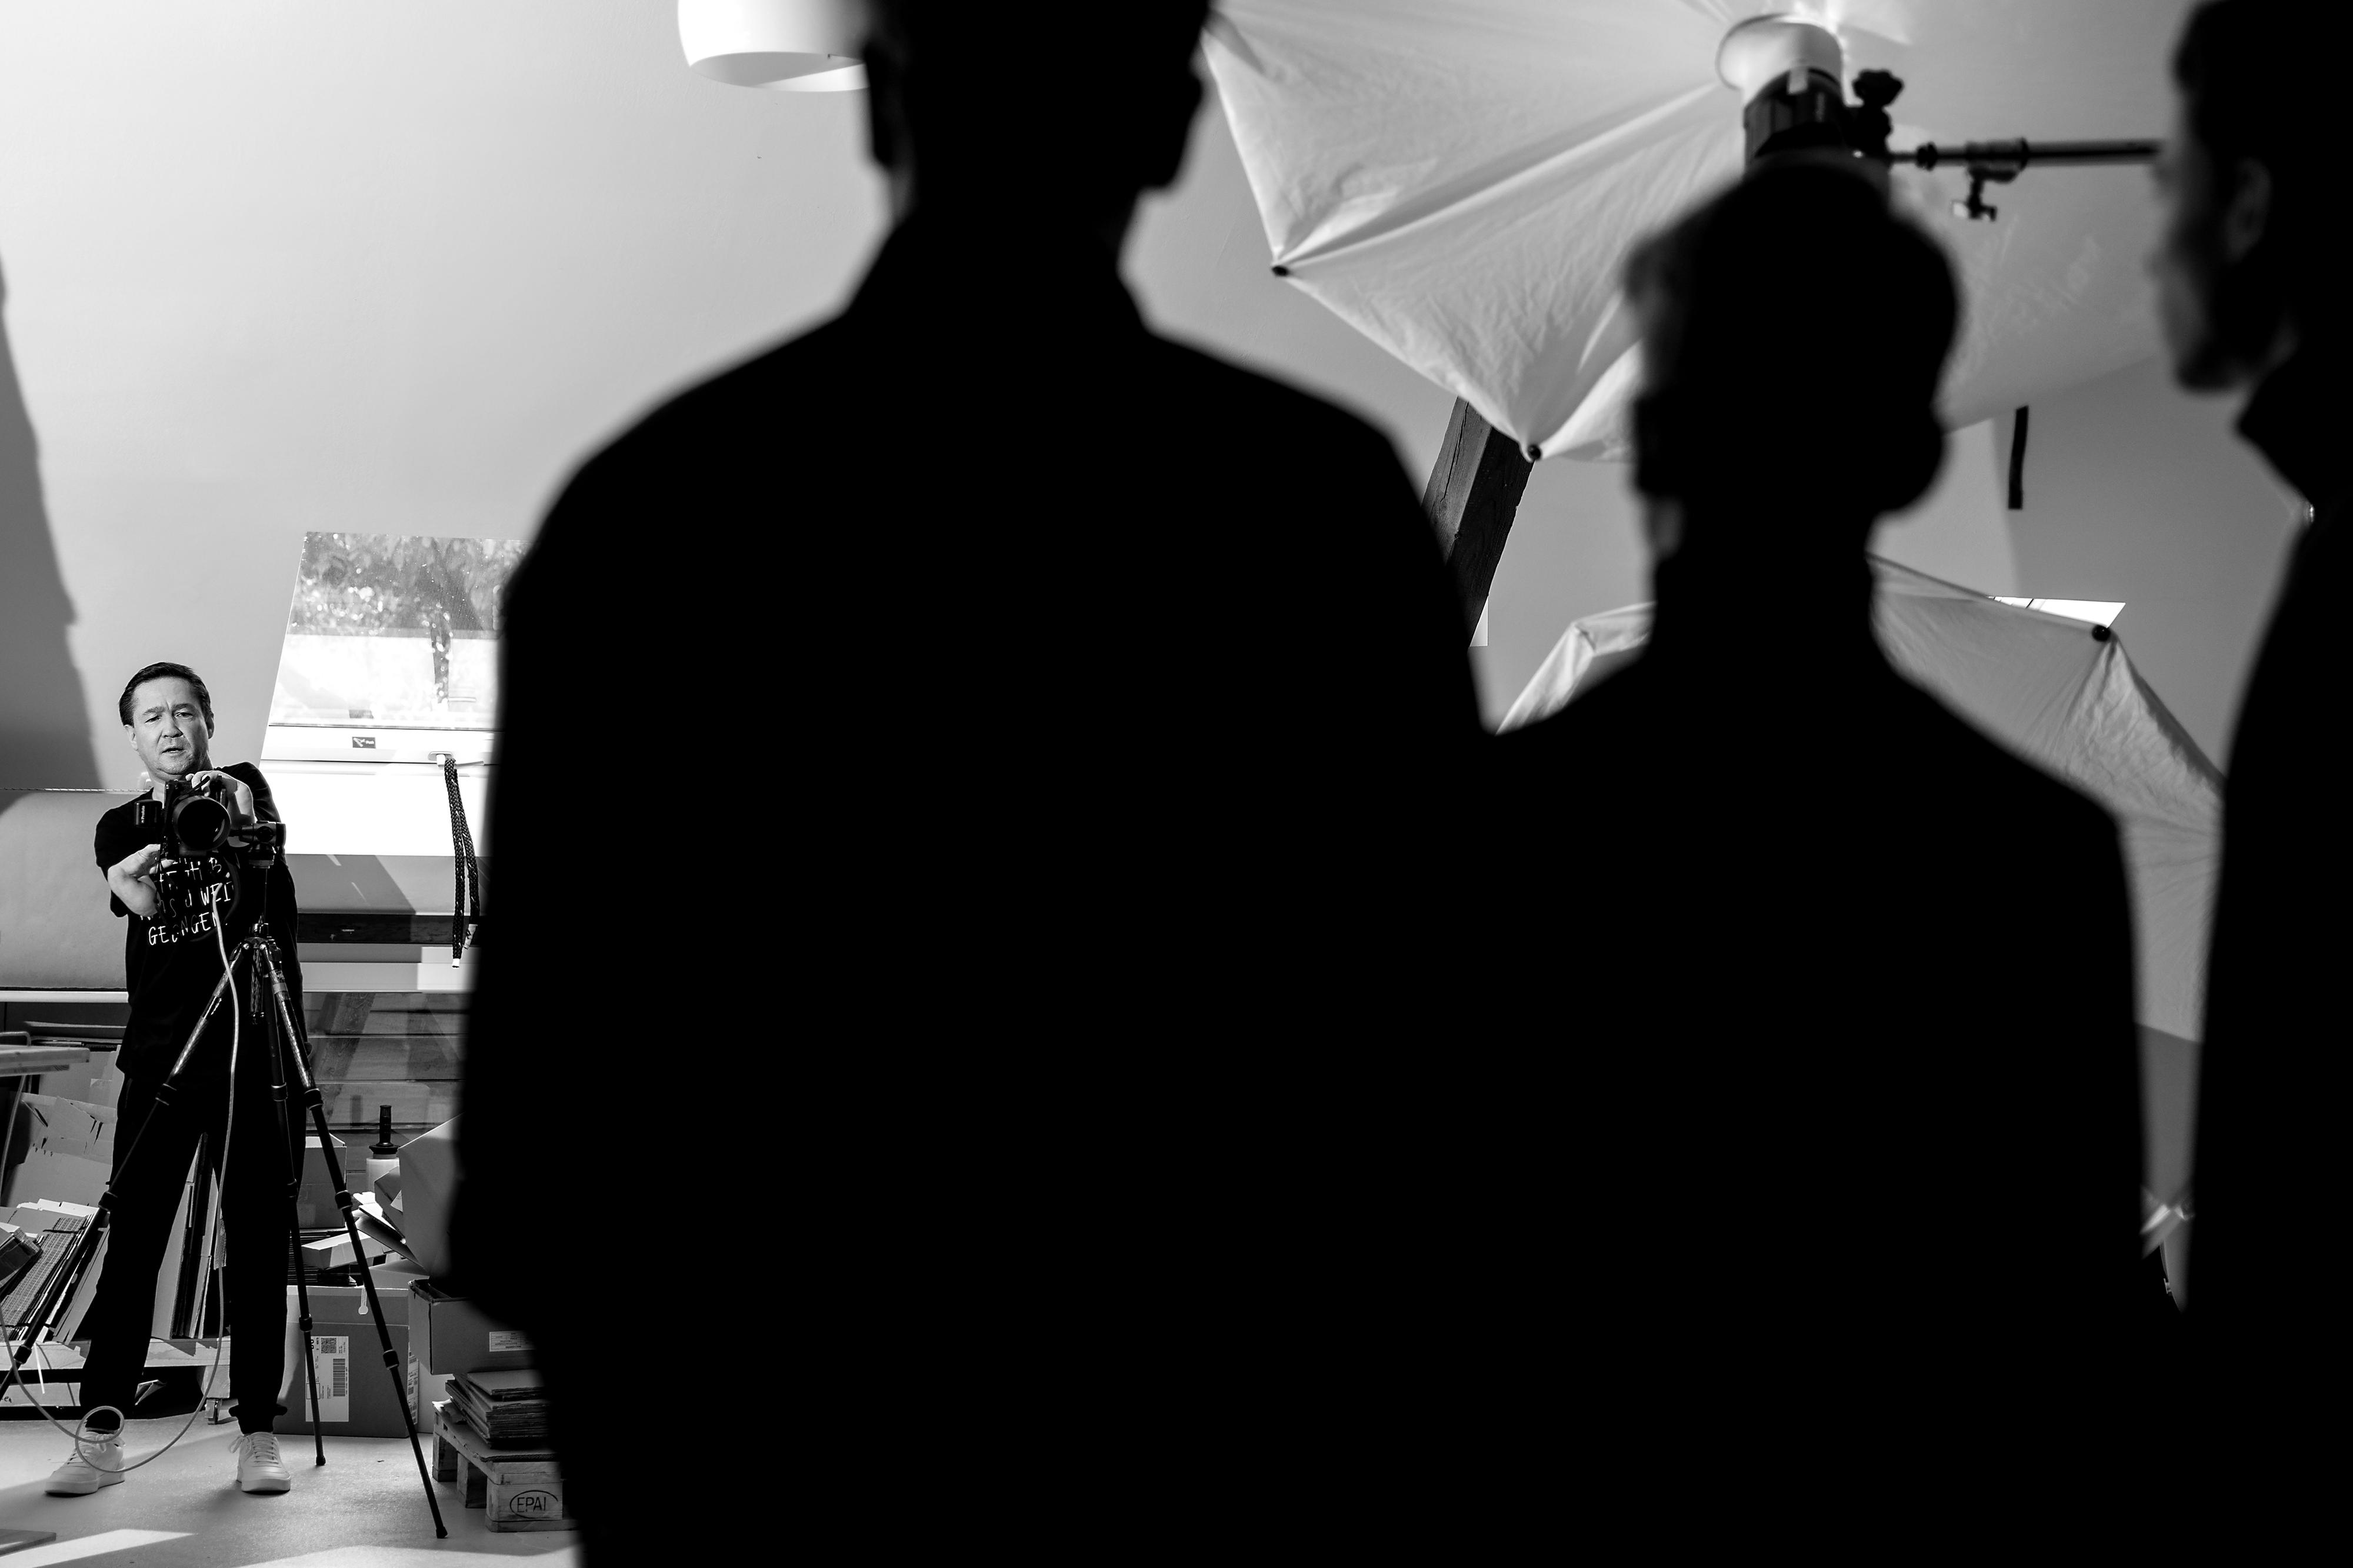 Ein contergangeschädigter Fotograf bei der Arbeit in einem Atelier. Im Vordergrund stehen drei Personen von der Kamera abgewandt.